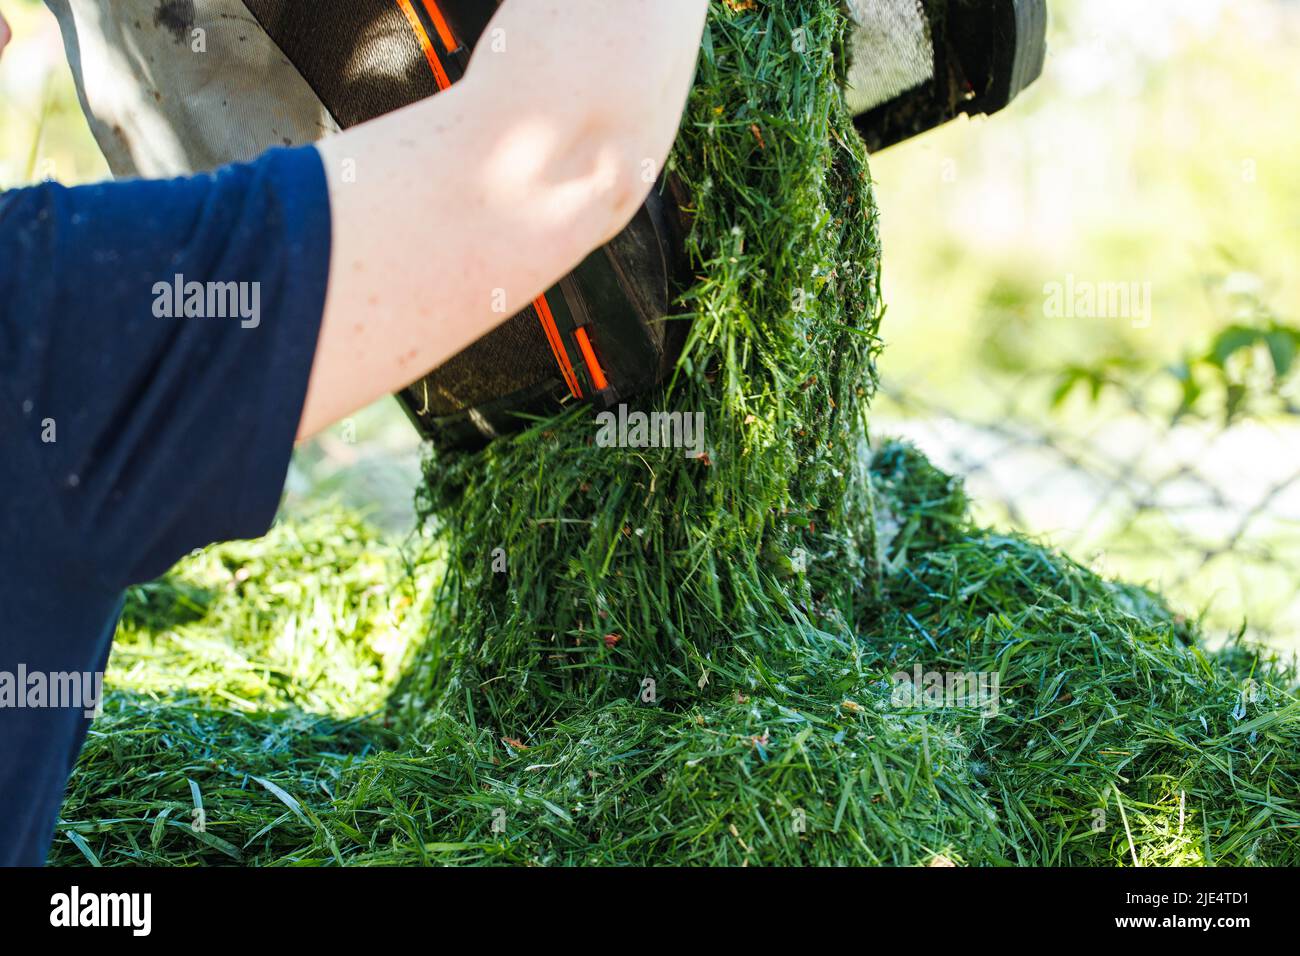 Primer plano de manos humanas lanzando un montón verde fresco cortado de hierba del cortacésped en el suelo. Fertilizante orgánico Foto de stock